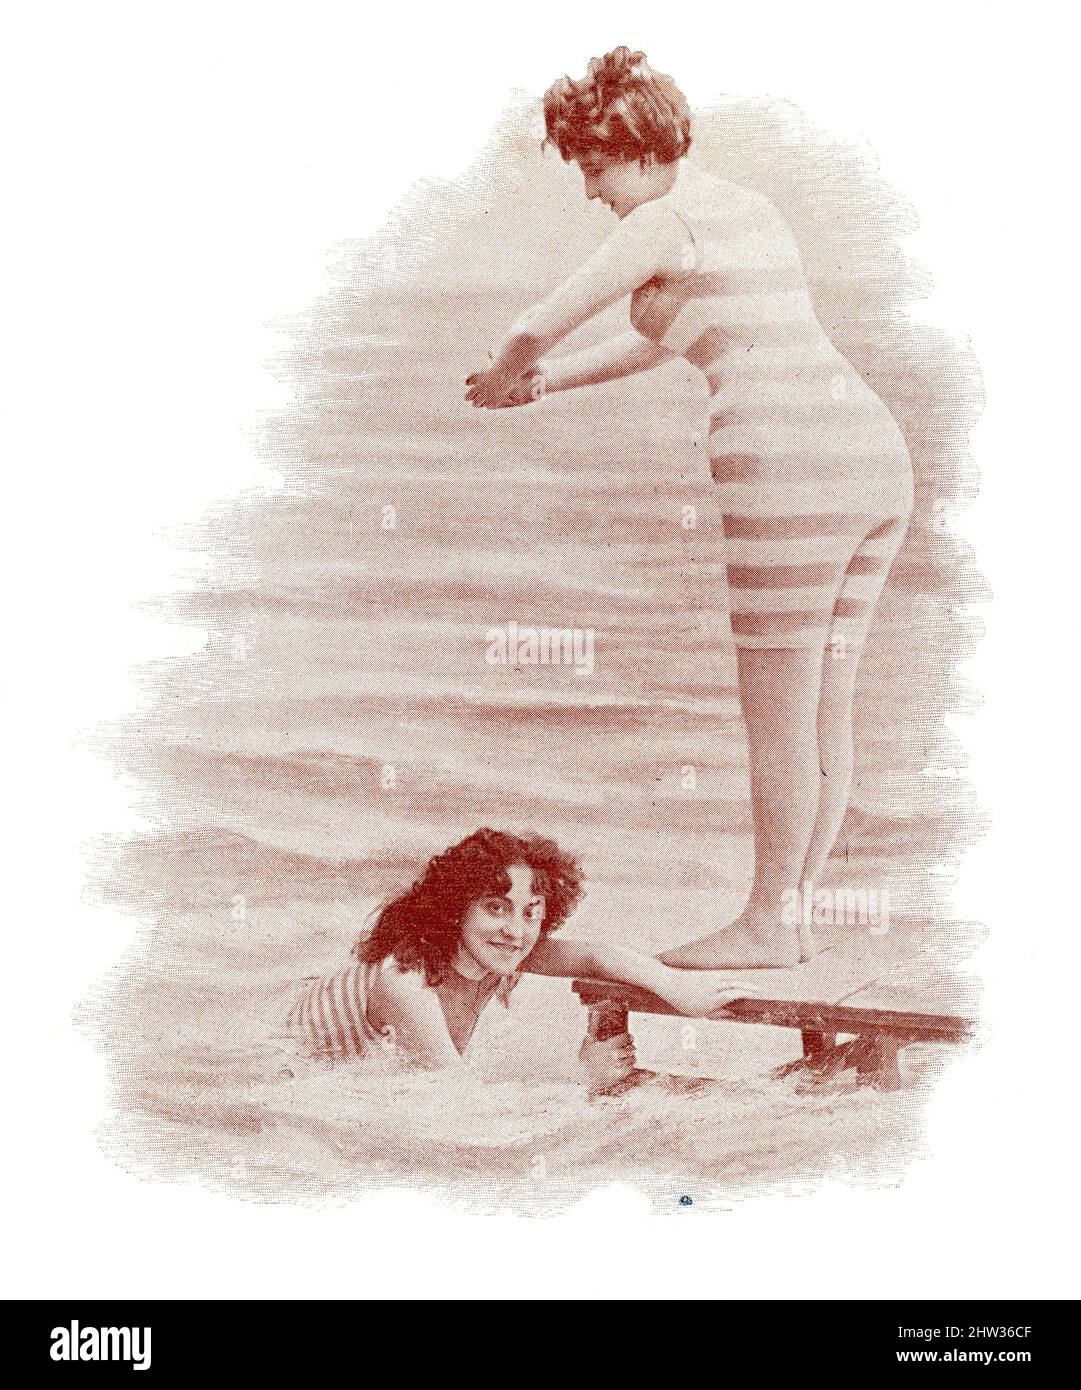 Les naiads parisiens. Deux amies sur la plage. Image du magazine de théâtre franco-allemand illustré « Das Album », 1898. Banque D'Images